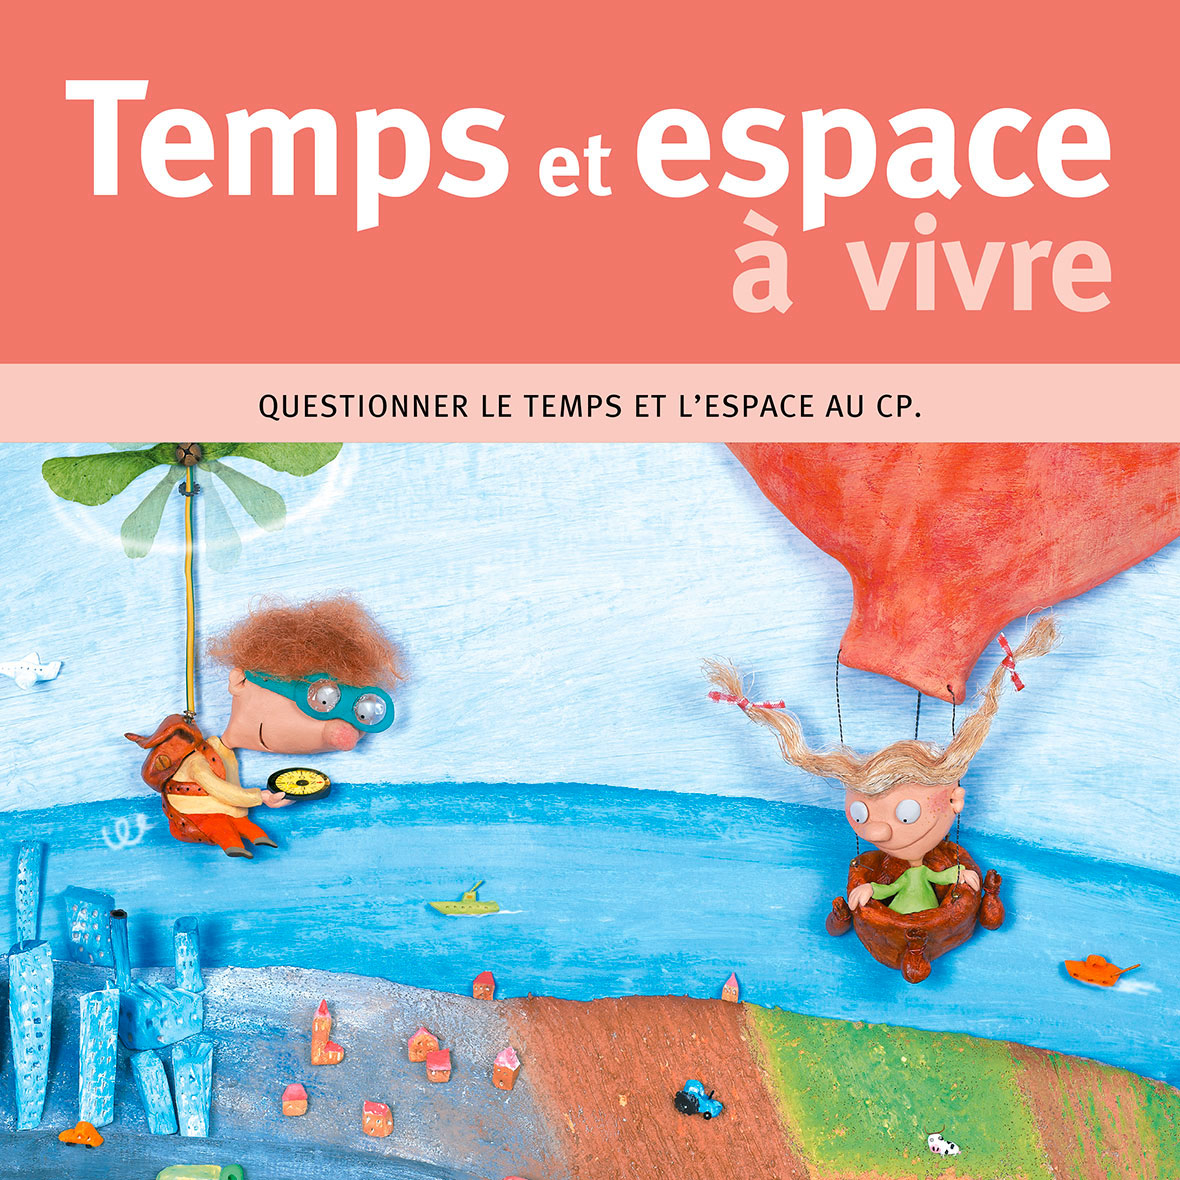 Temps et espace a vivre cp miniature 1 acces editions